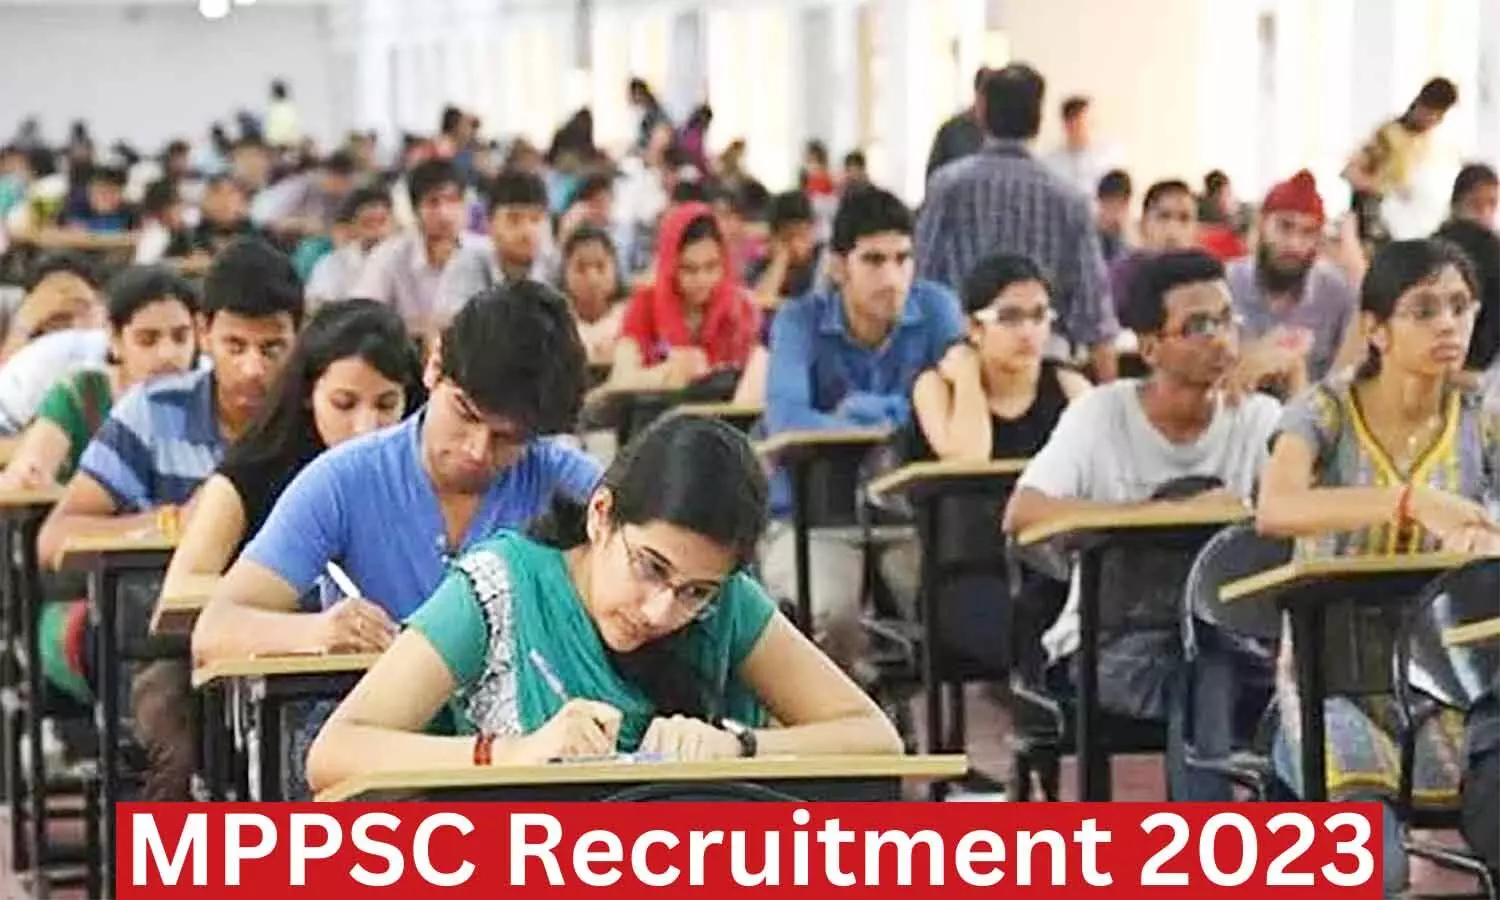 MPPSC Recruitment 2023: राज्य सेवा प्रारंभिक परीक्षा के एडमिट कार्ड 14 मई को होंगे जारी, 442 पदों पर होनी है भर्ती, यहां पर जानें परीक्षा पैटर्न व अन्य जानकारियां